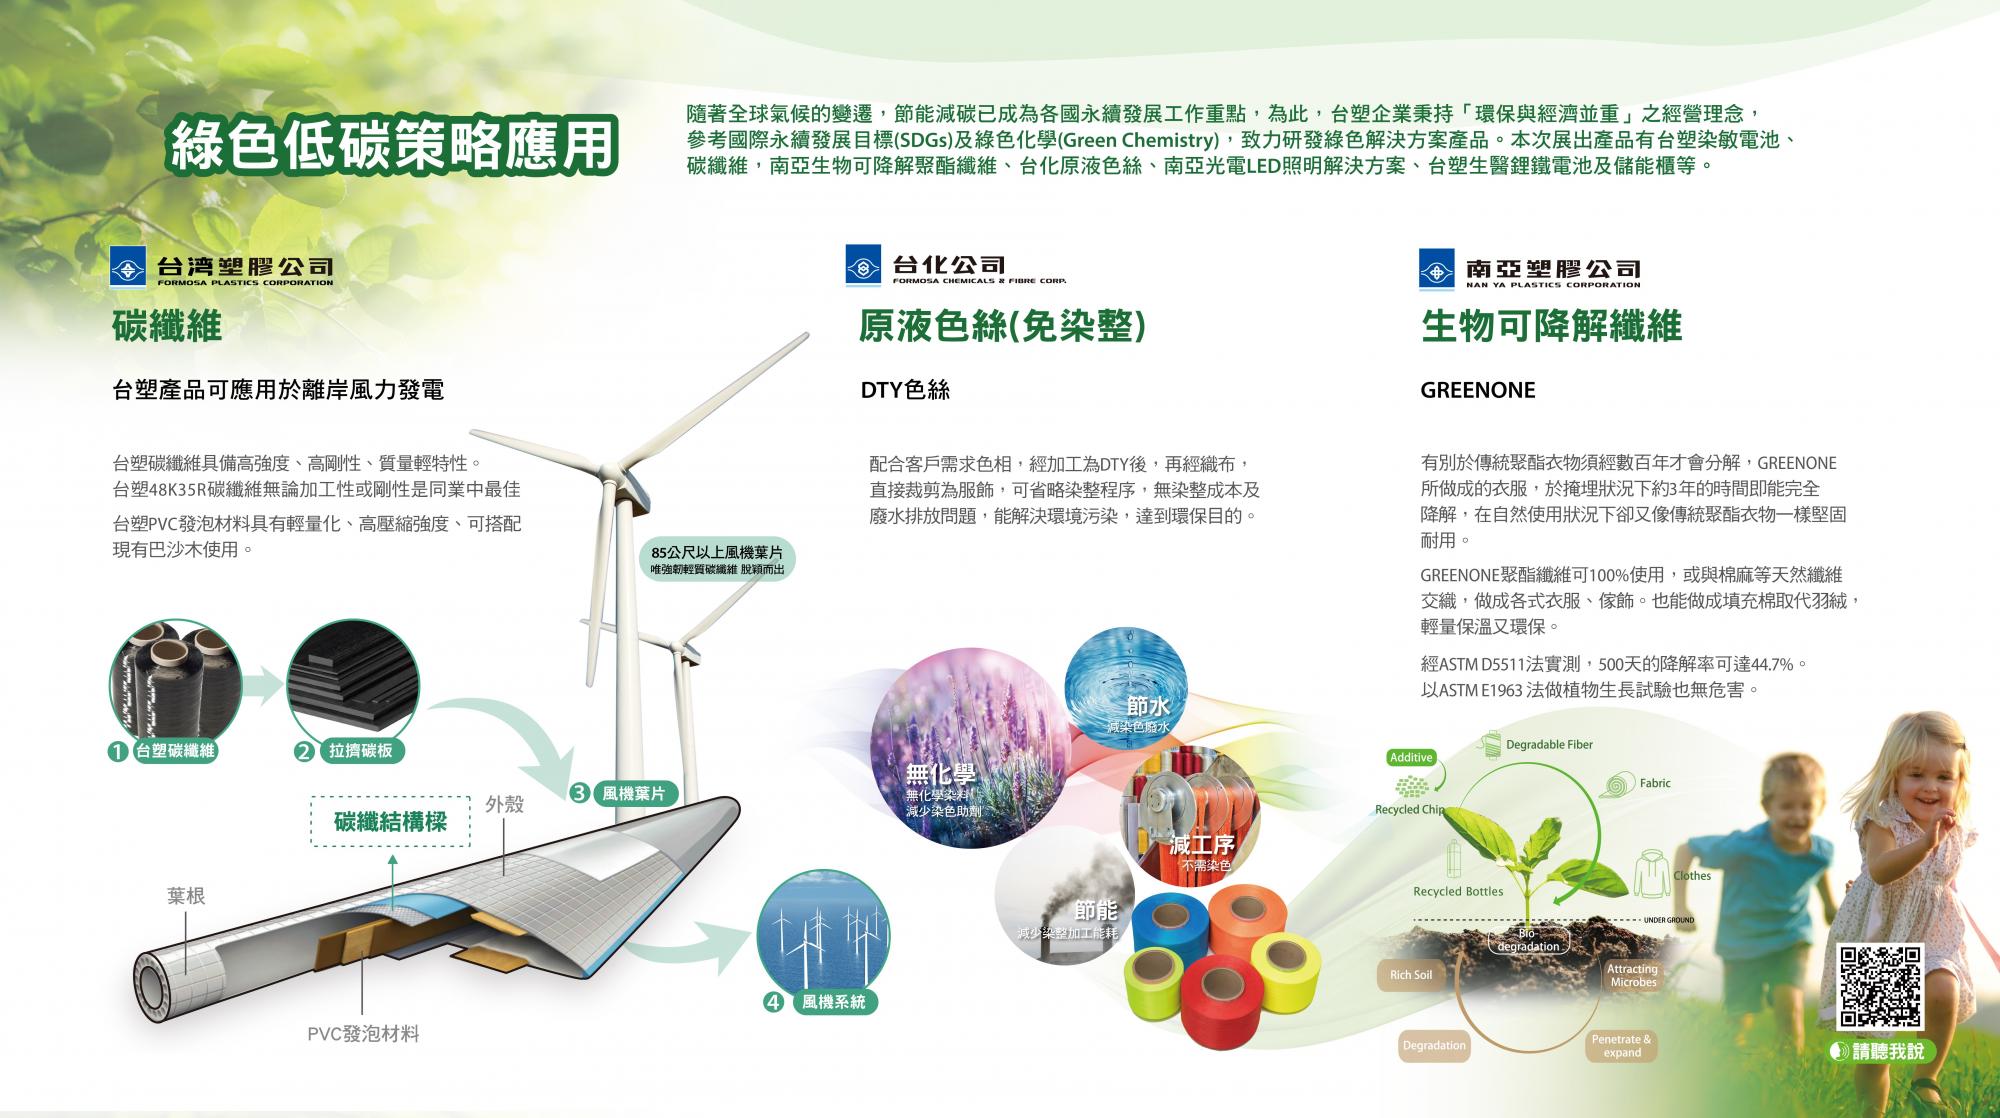 06-本企業綠色低碳策略(綠色解決方案)應用.jpg